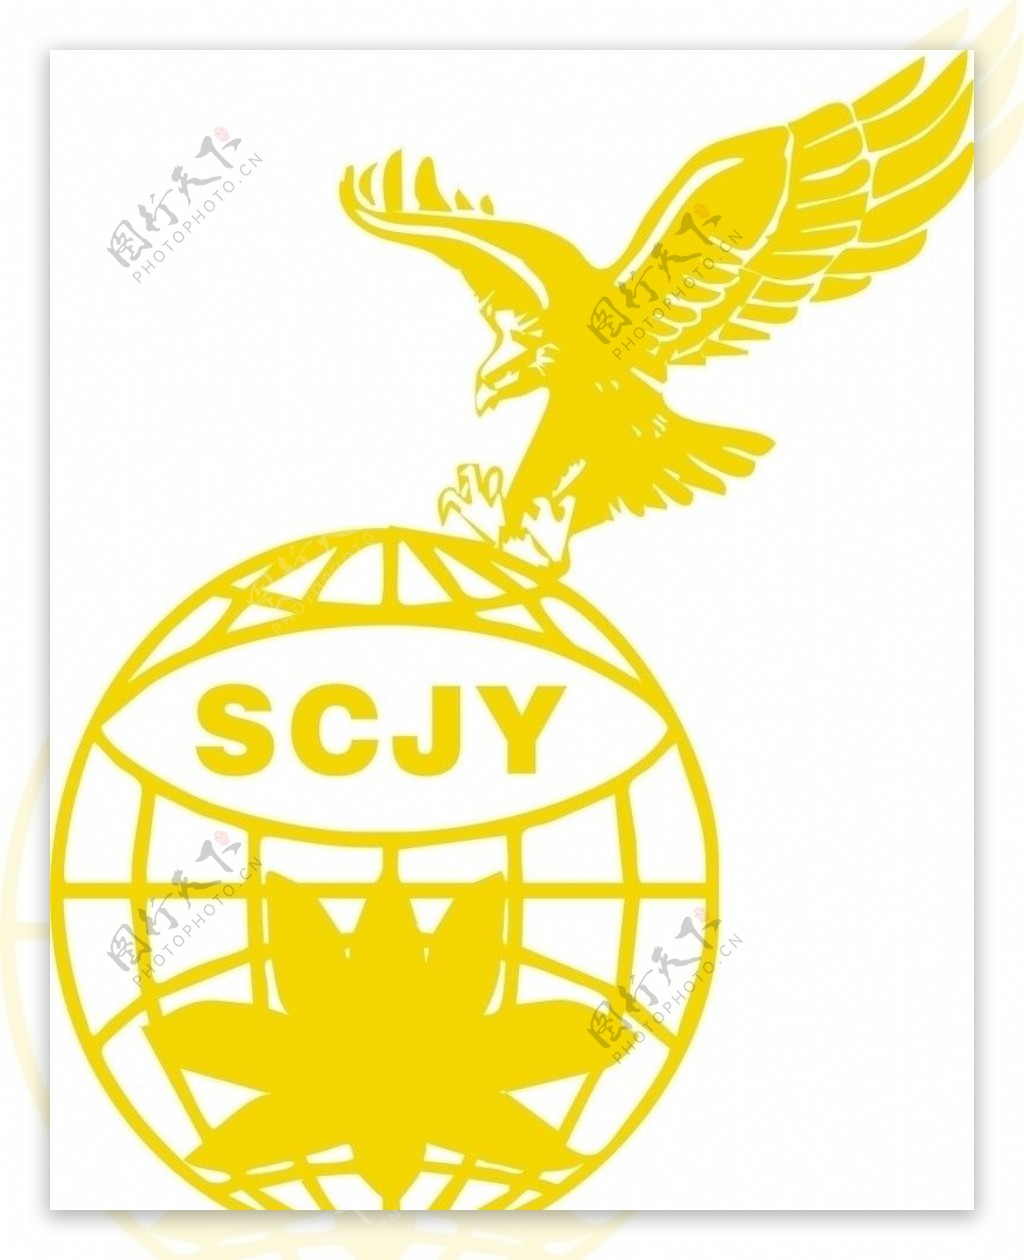 金鹰logo图片